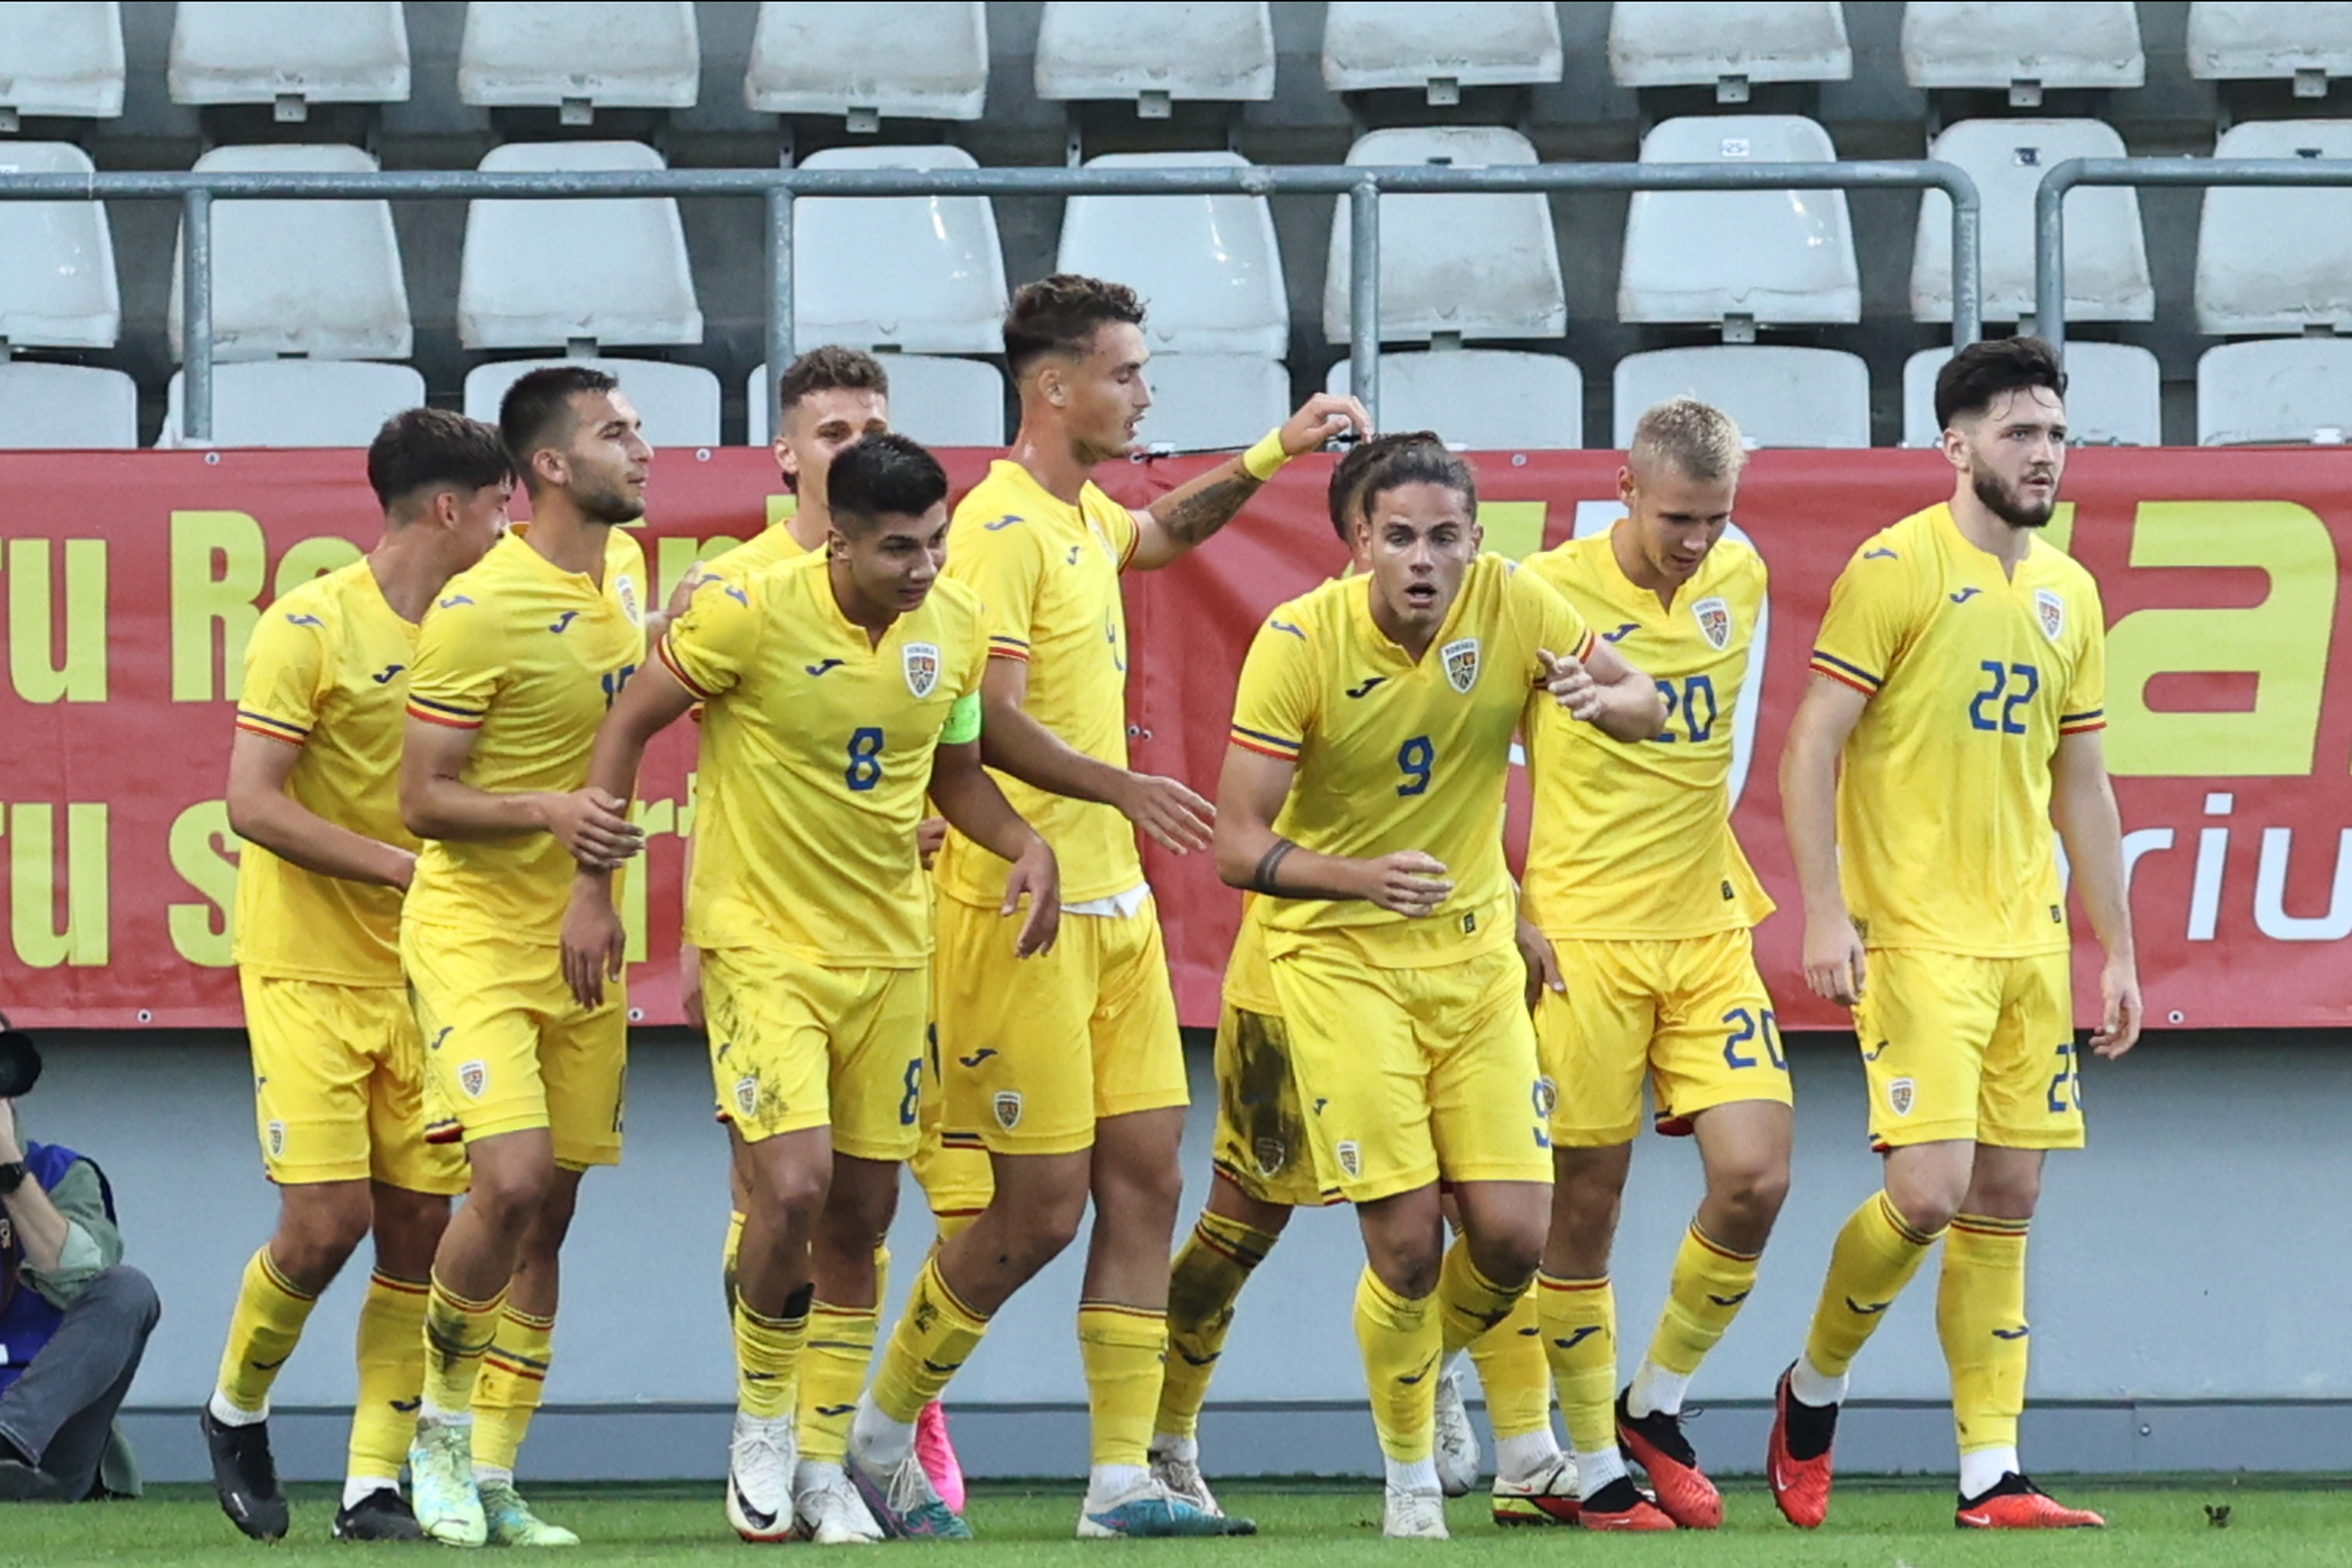 Lotul României U20 pentru meciul cu Germania, anunțat de Costin Curelea